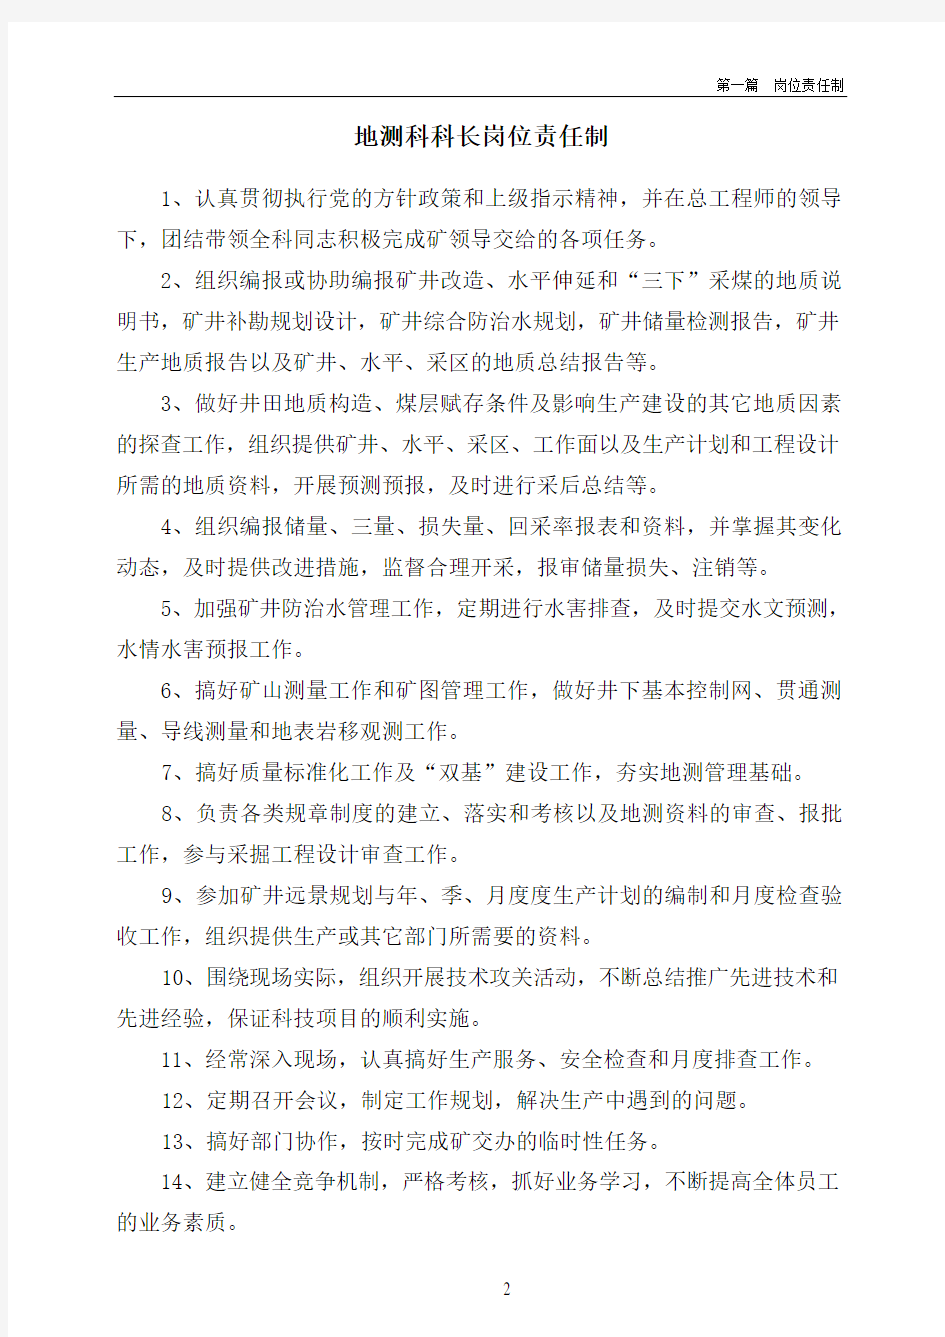 唐阳煤矿地测岗位责任制及管理制度(内部)